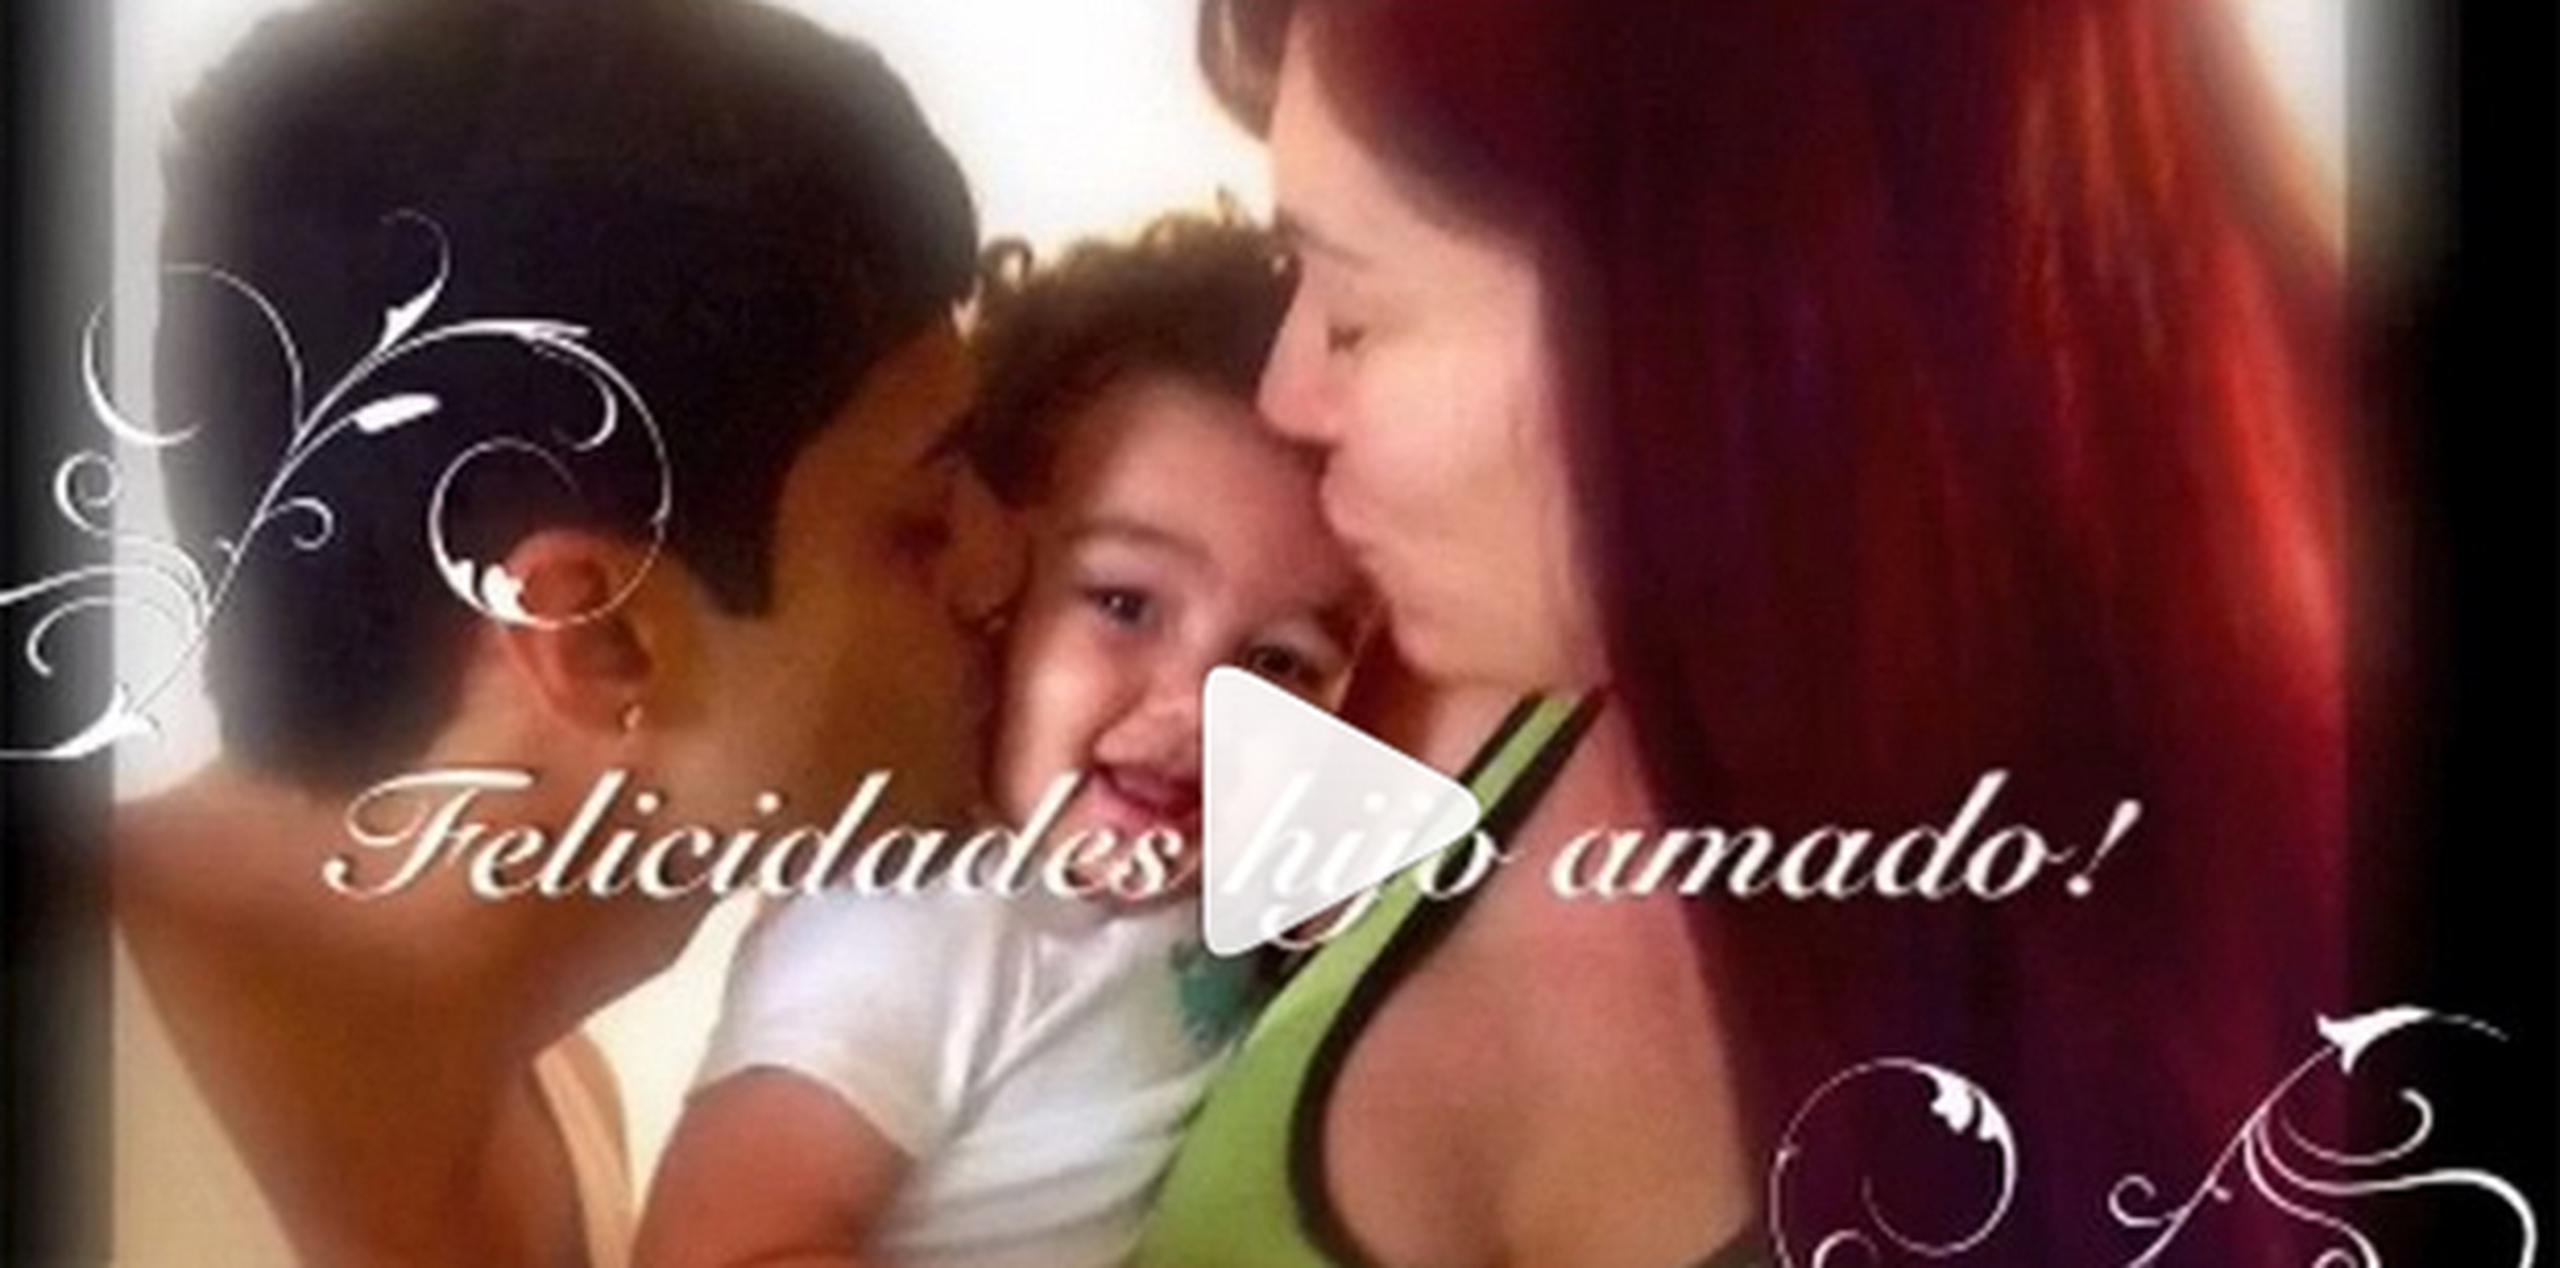 Al final del vídeo aparece el artista junto con su compañera y el niño en medio de ambos. (Instagram)